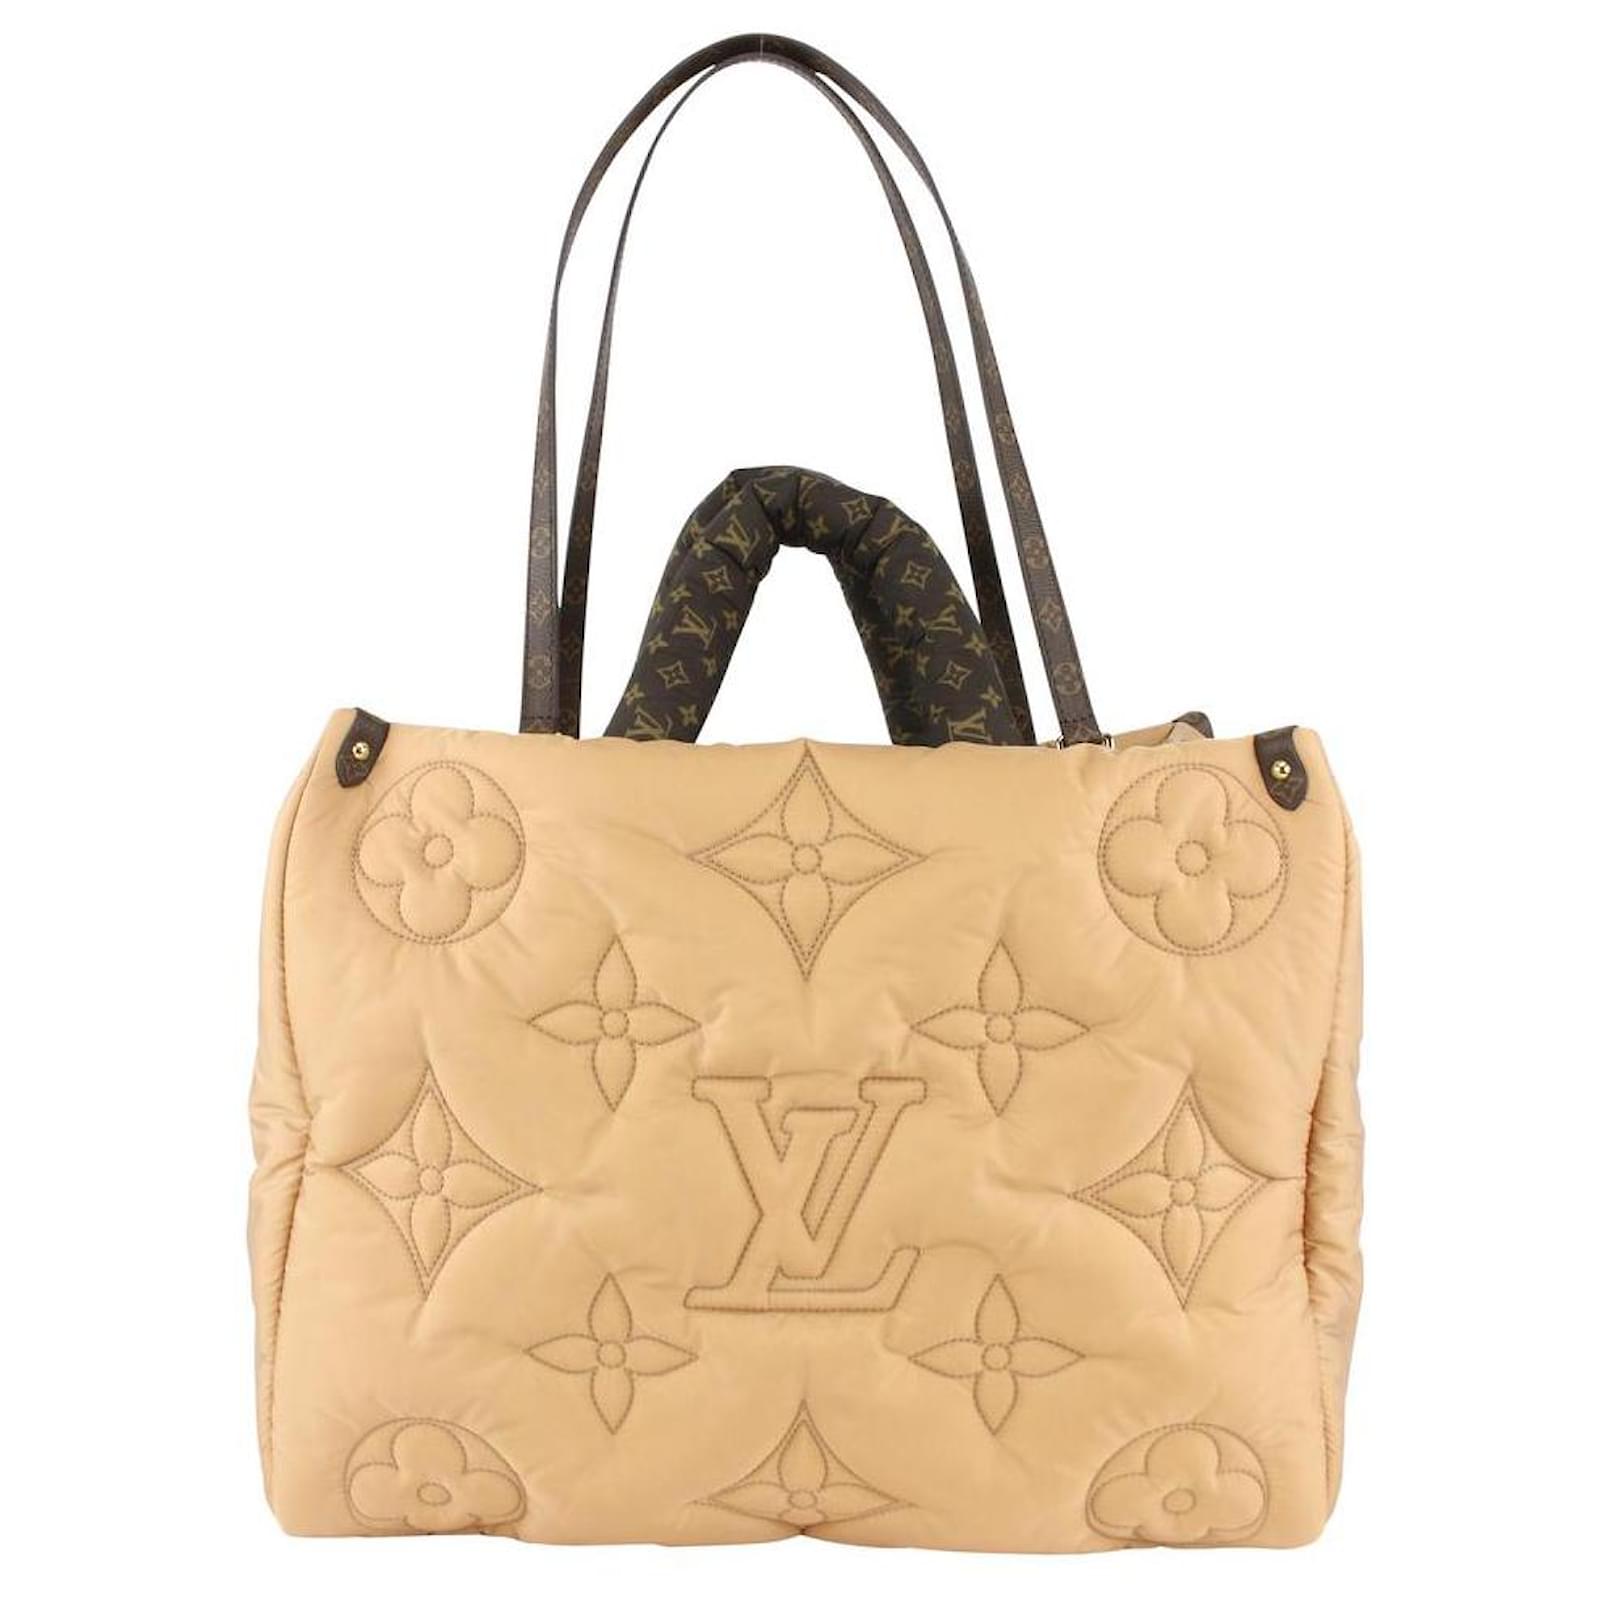 La sacoche Louis Vuitton portée par OBOY sur son compte Instagram